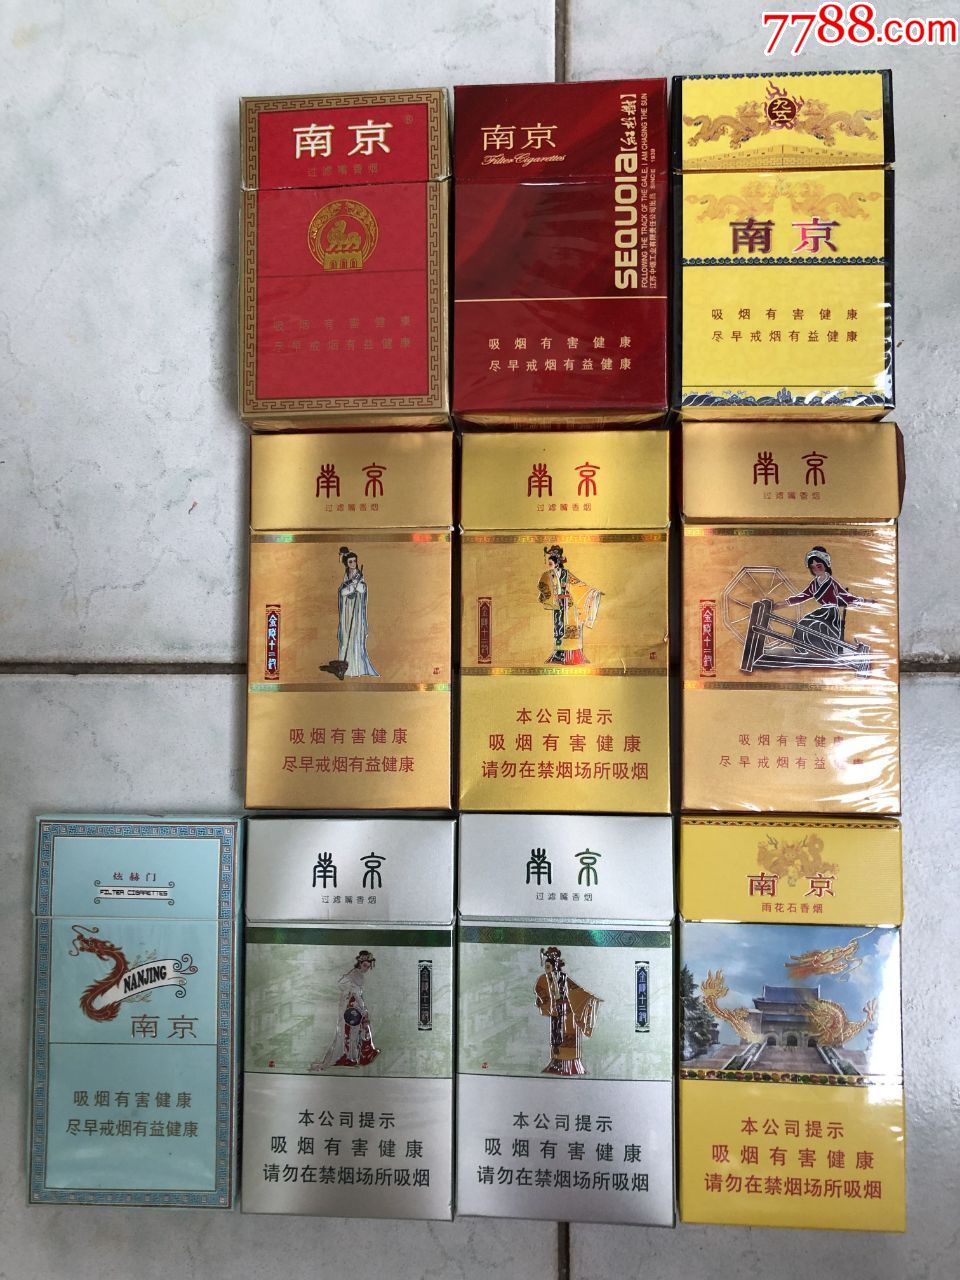 《南京》系列烟盒(10个)